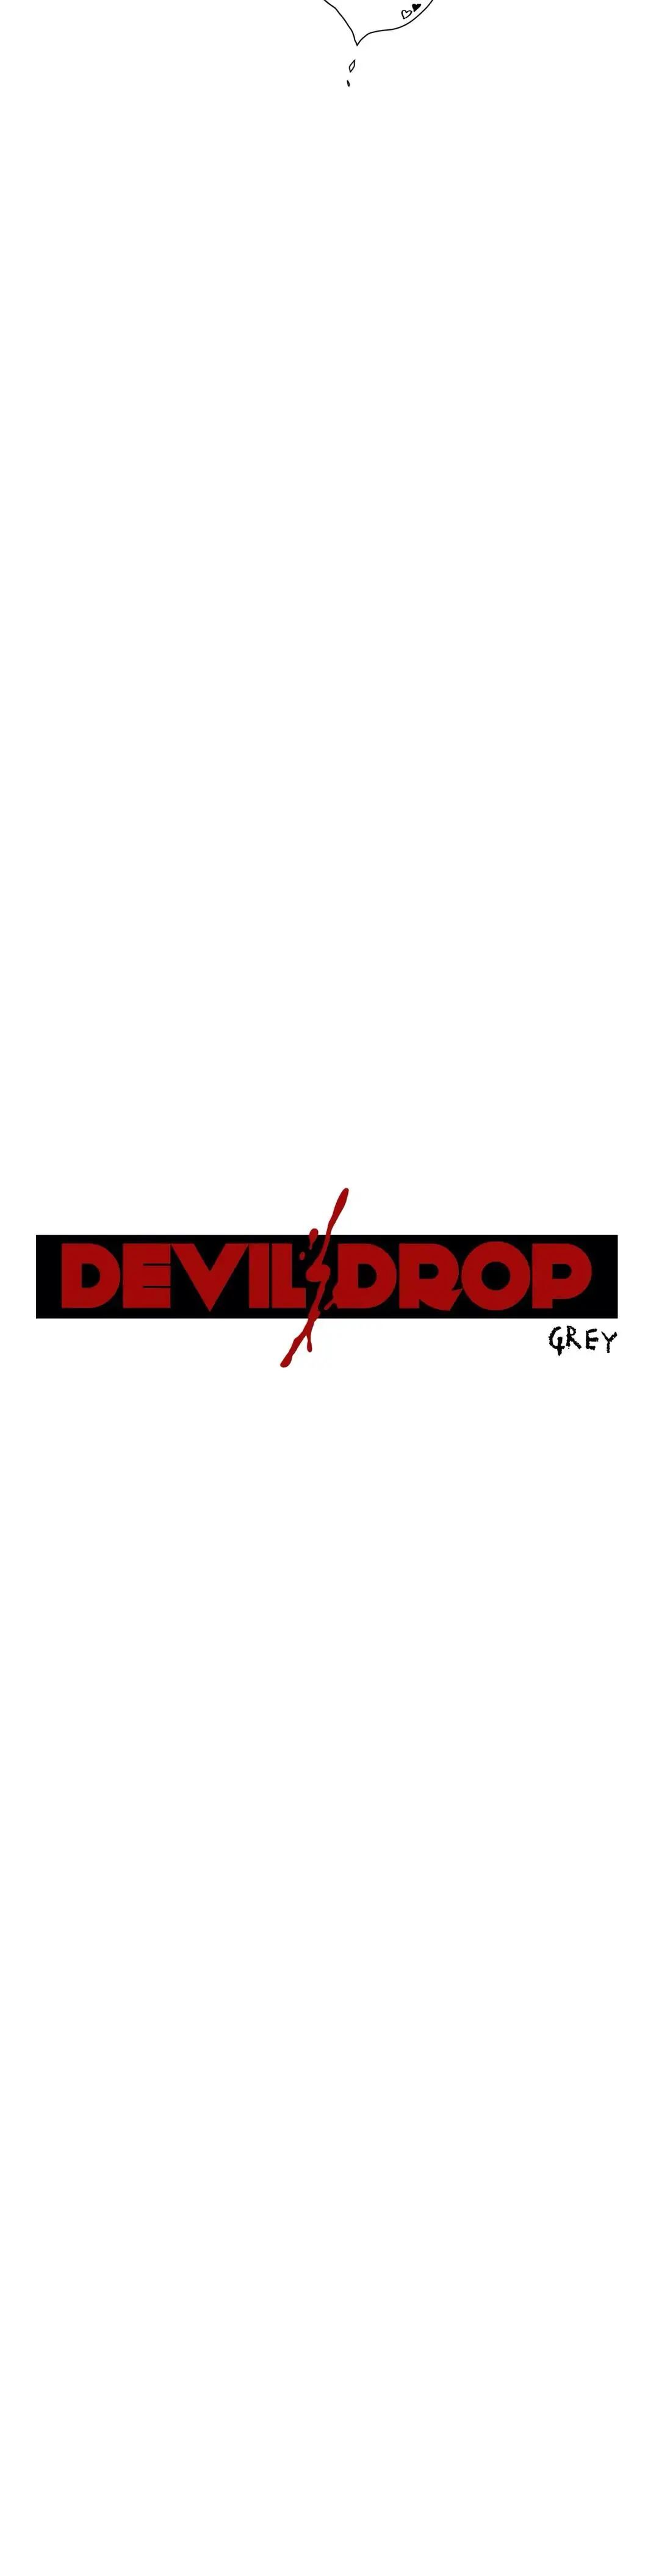 Devil Drop image